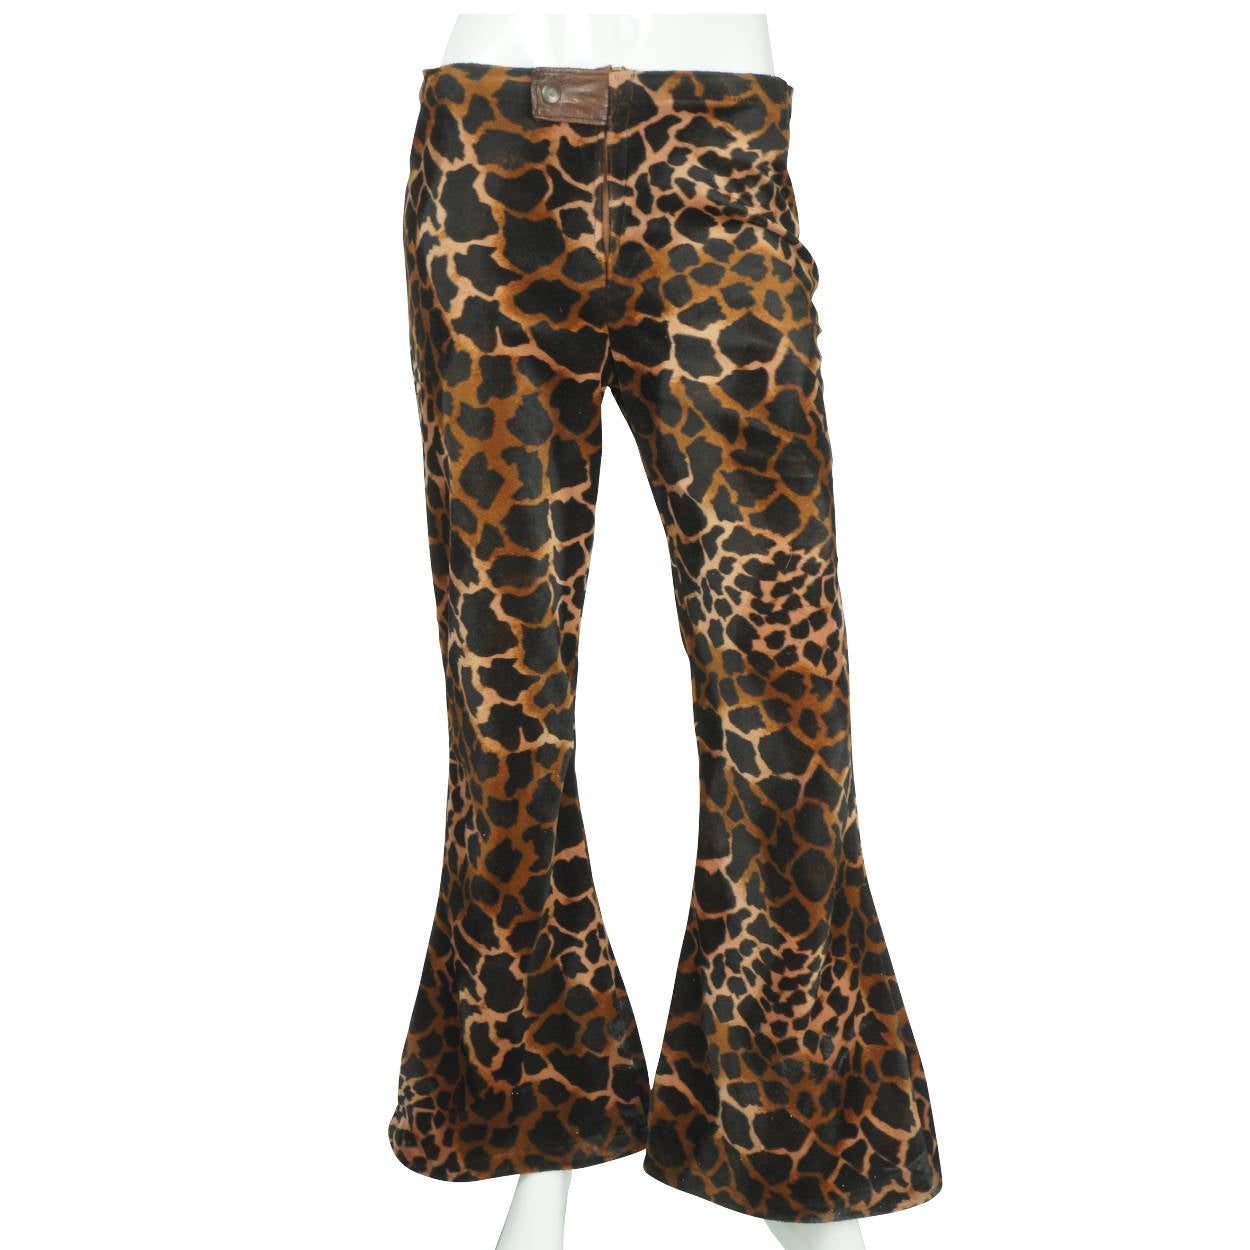 White Leopard Print Flare Pants - Zesty Swimwear